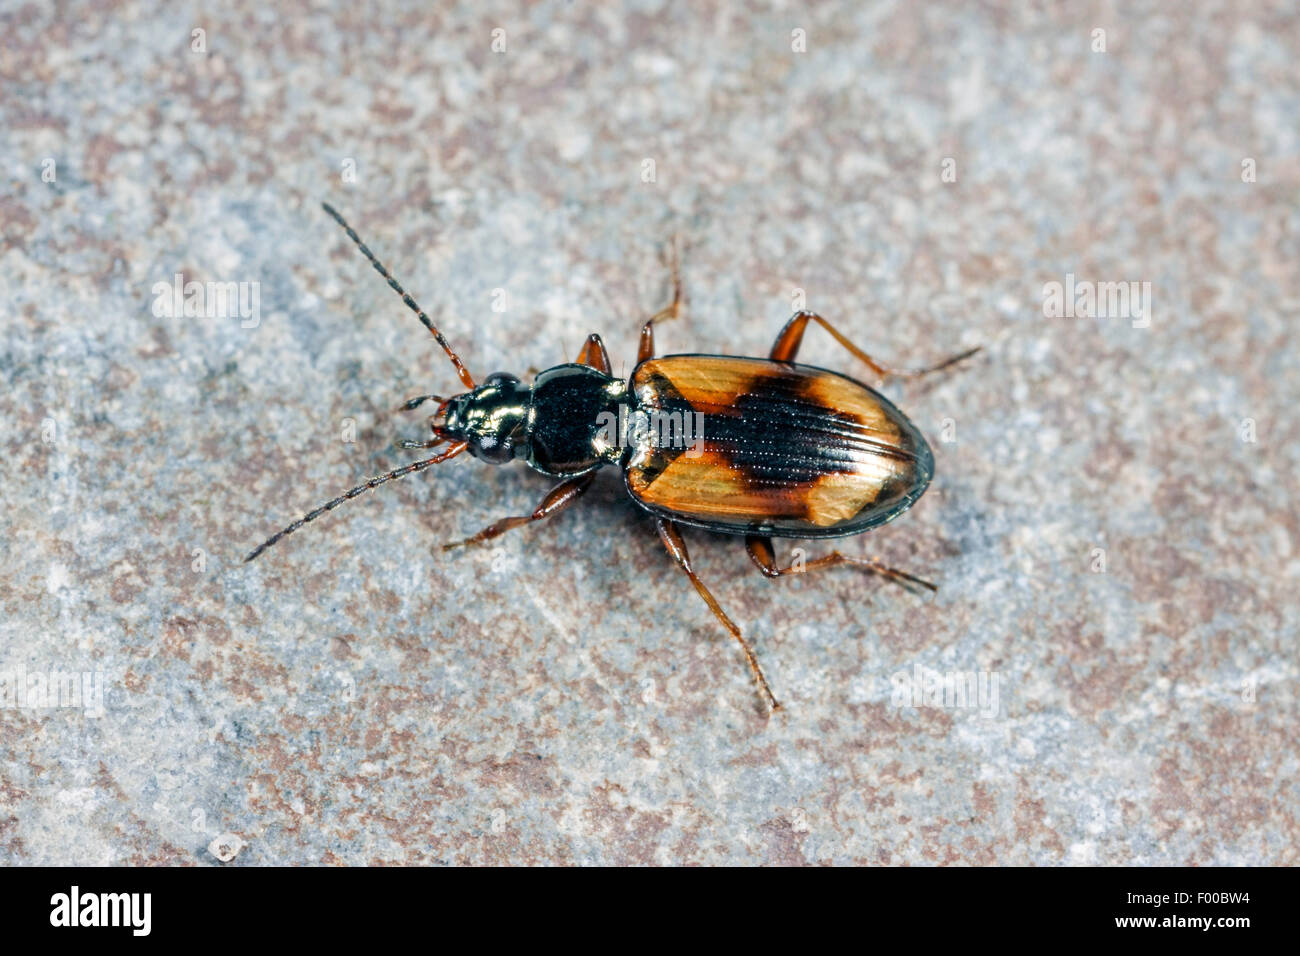 Ground beetle (Bembidion femoratum, Peryphus femoratum), on a stone, Germany Stock Photo